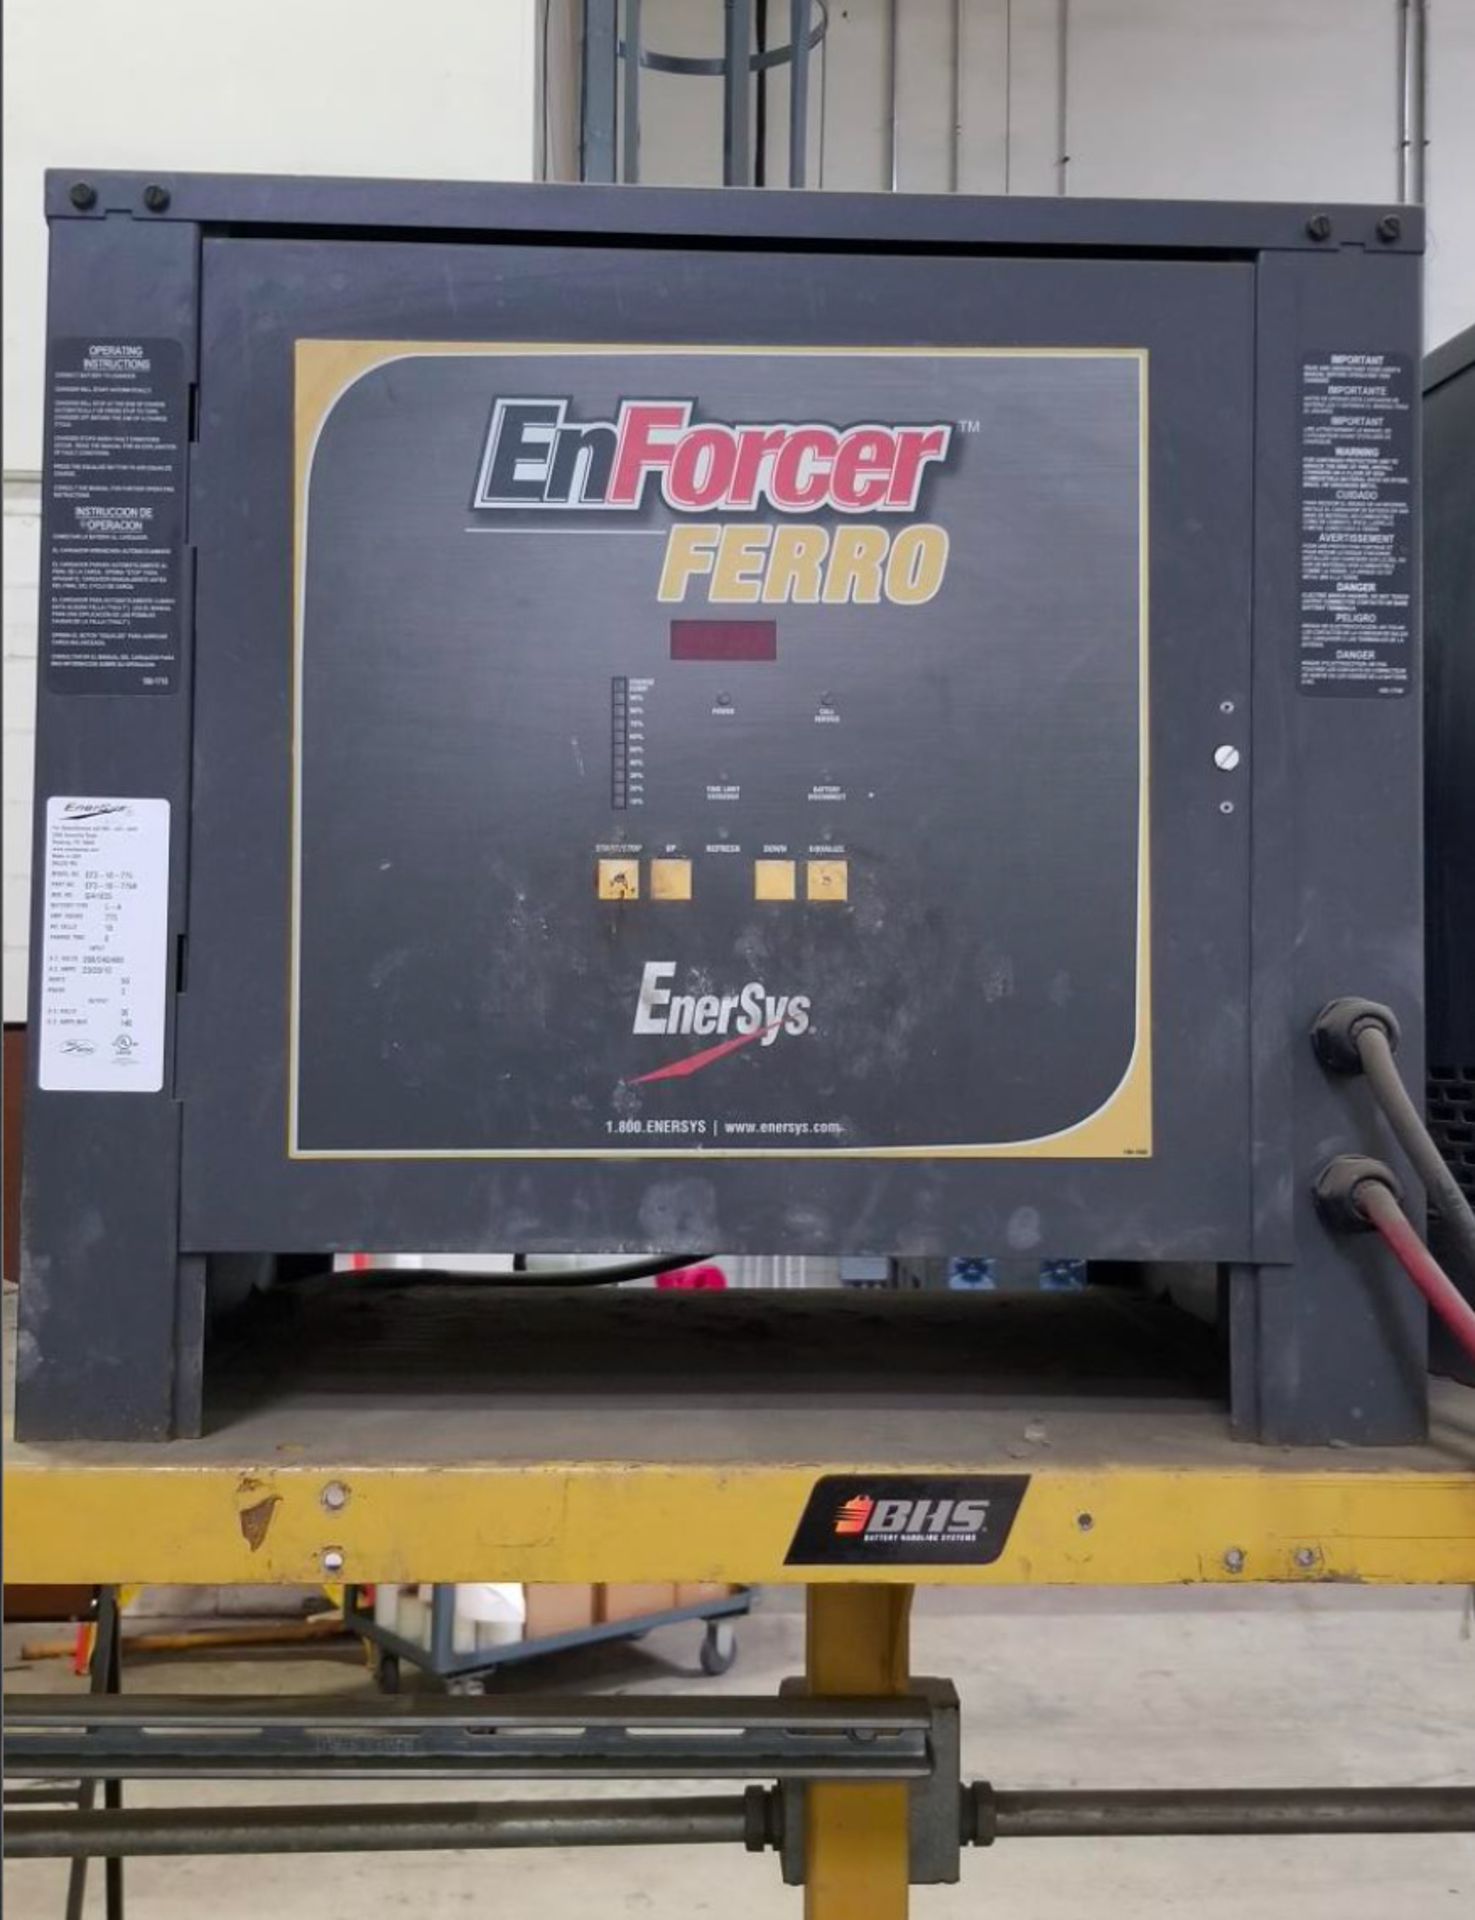 (4) Enersys Enforcer Ferro Forklift Battery Chargers, 36V / 140 Amps Max, Models EF3-18-775 - Image 5 of 10